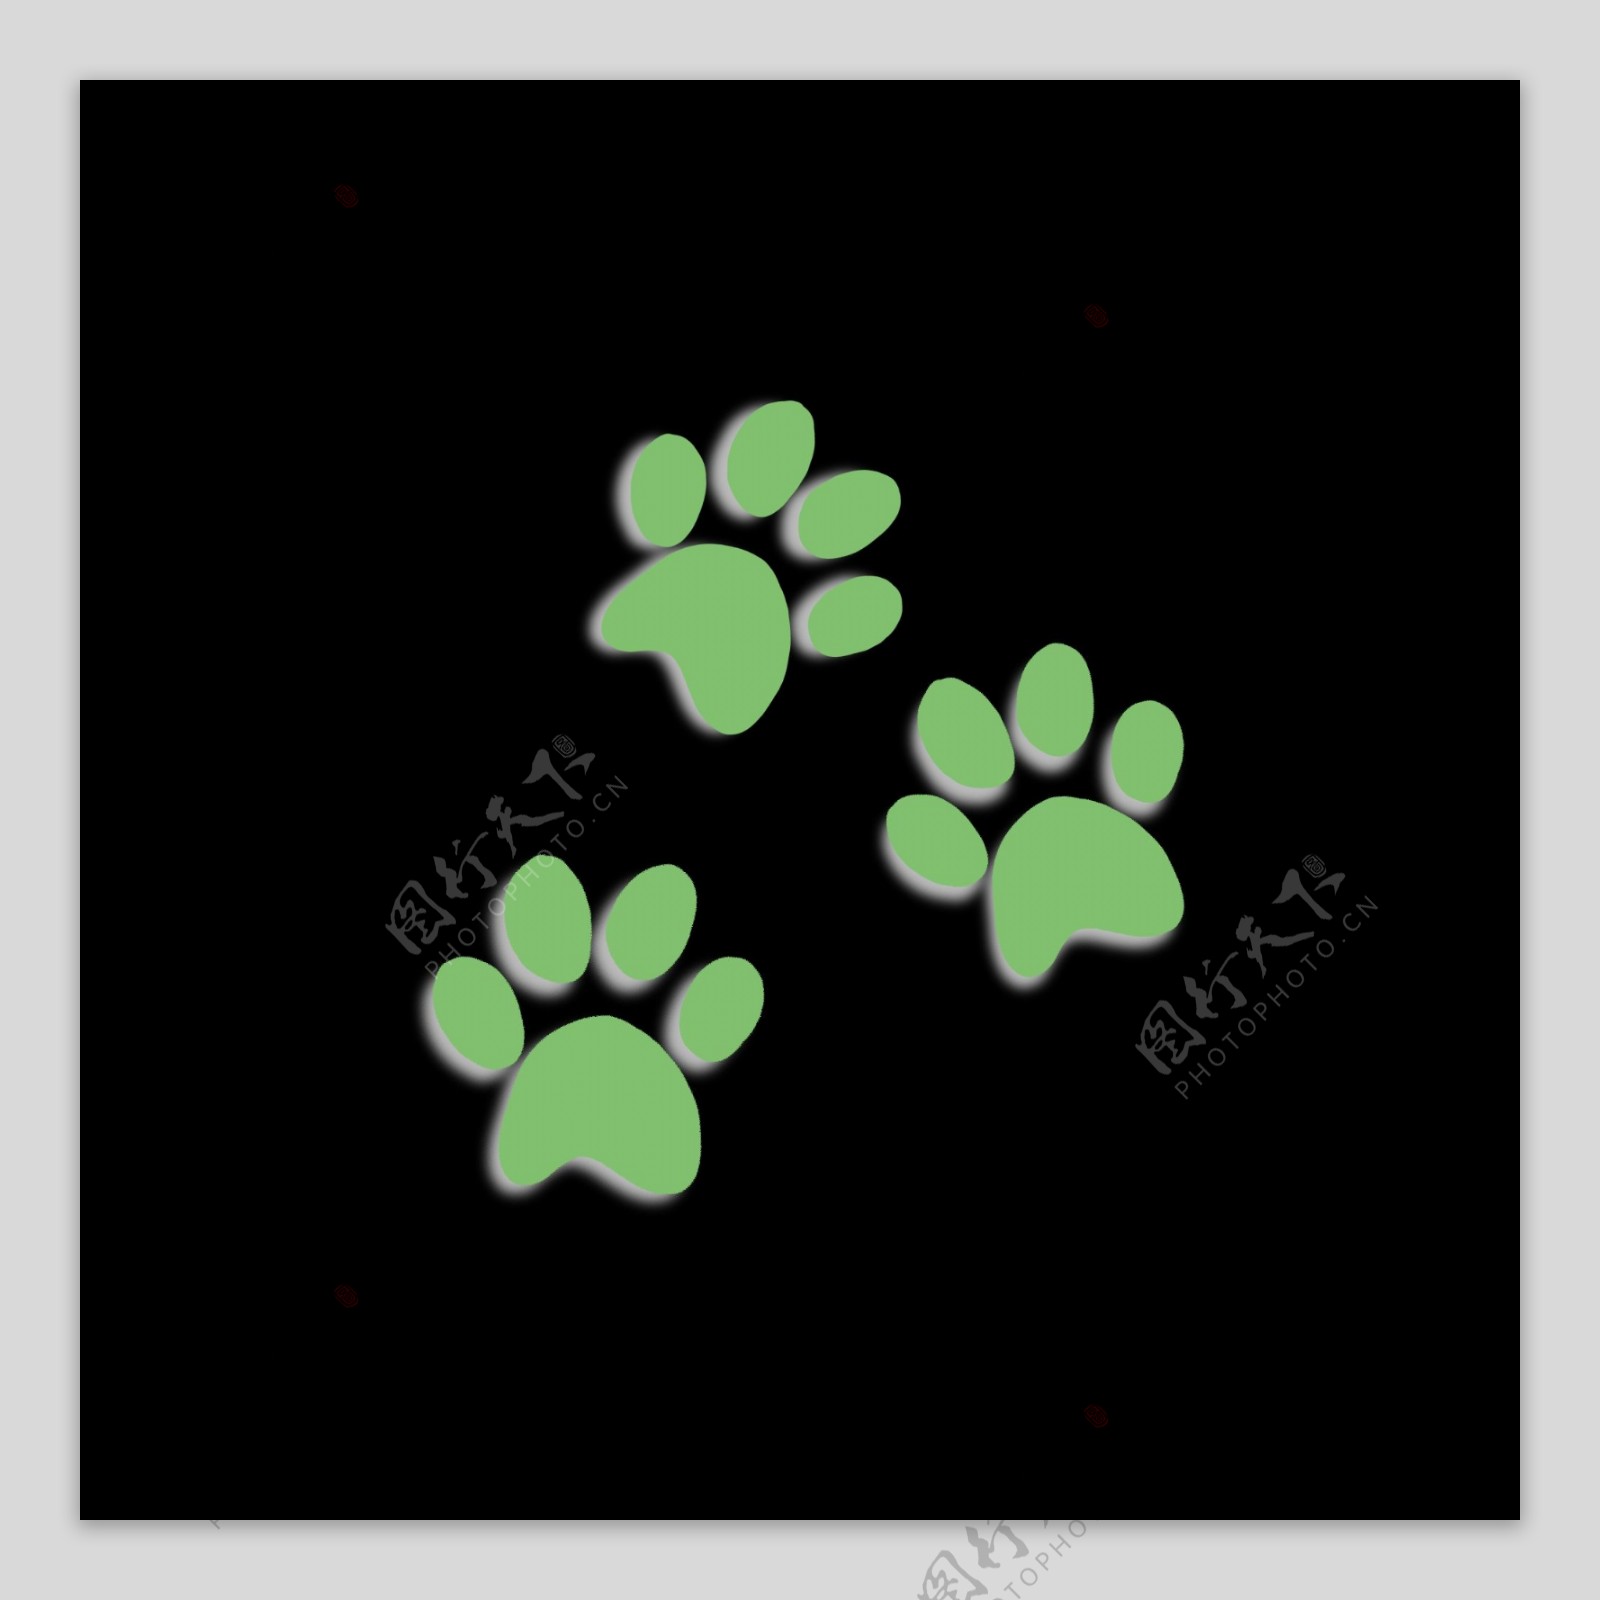 绿色阴影样式猫咪脚印